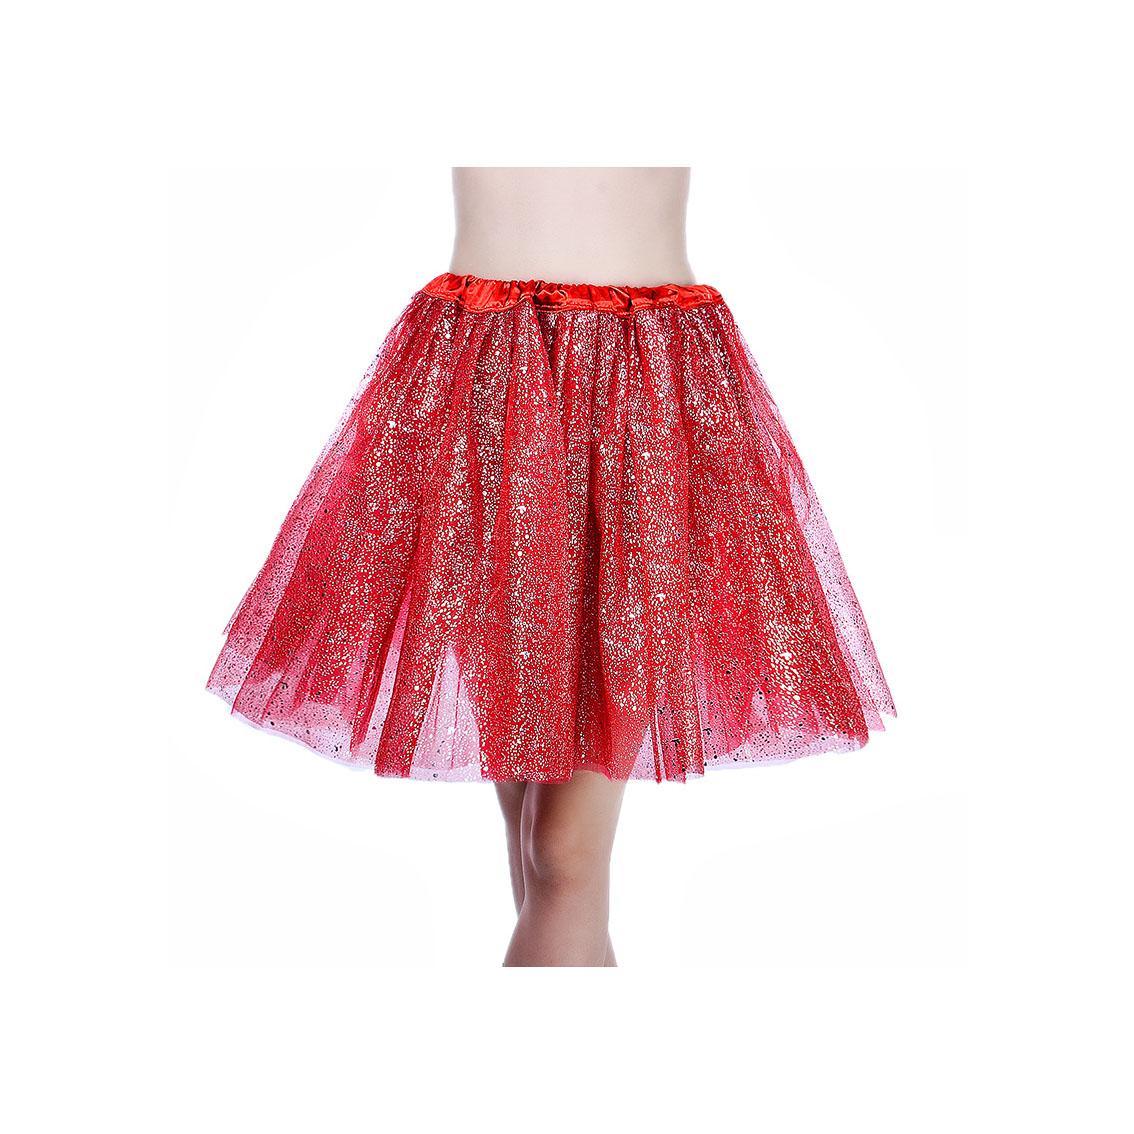 Adult Tutu Skirt Sequin Gilding Polka Dot 3 Layers Party Dance Ballet Pettiskirt Tulle Girl Mini Skirt red